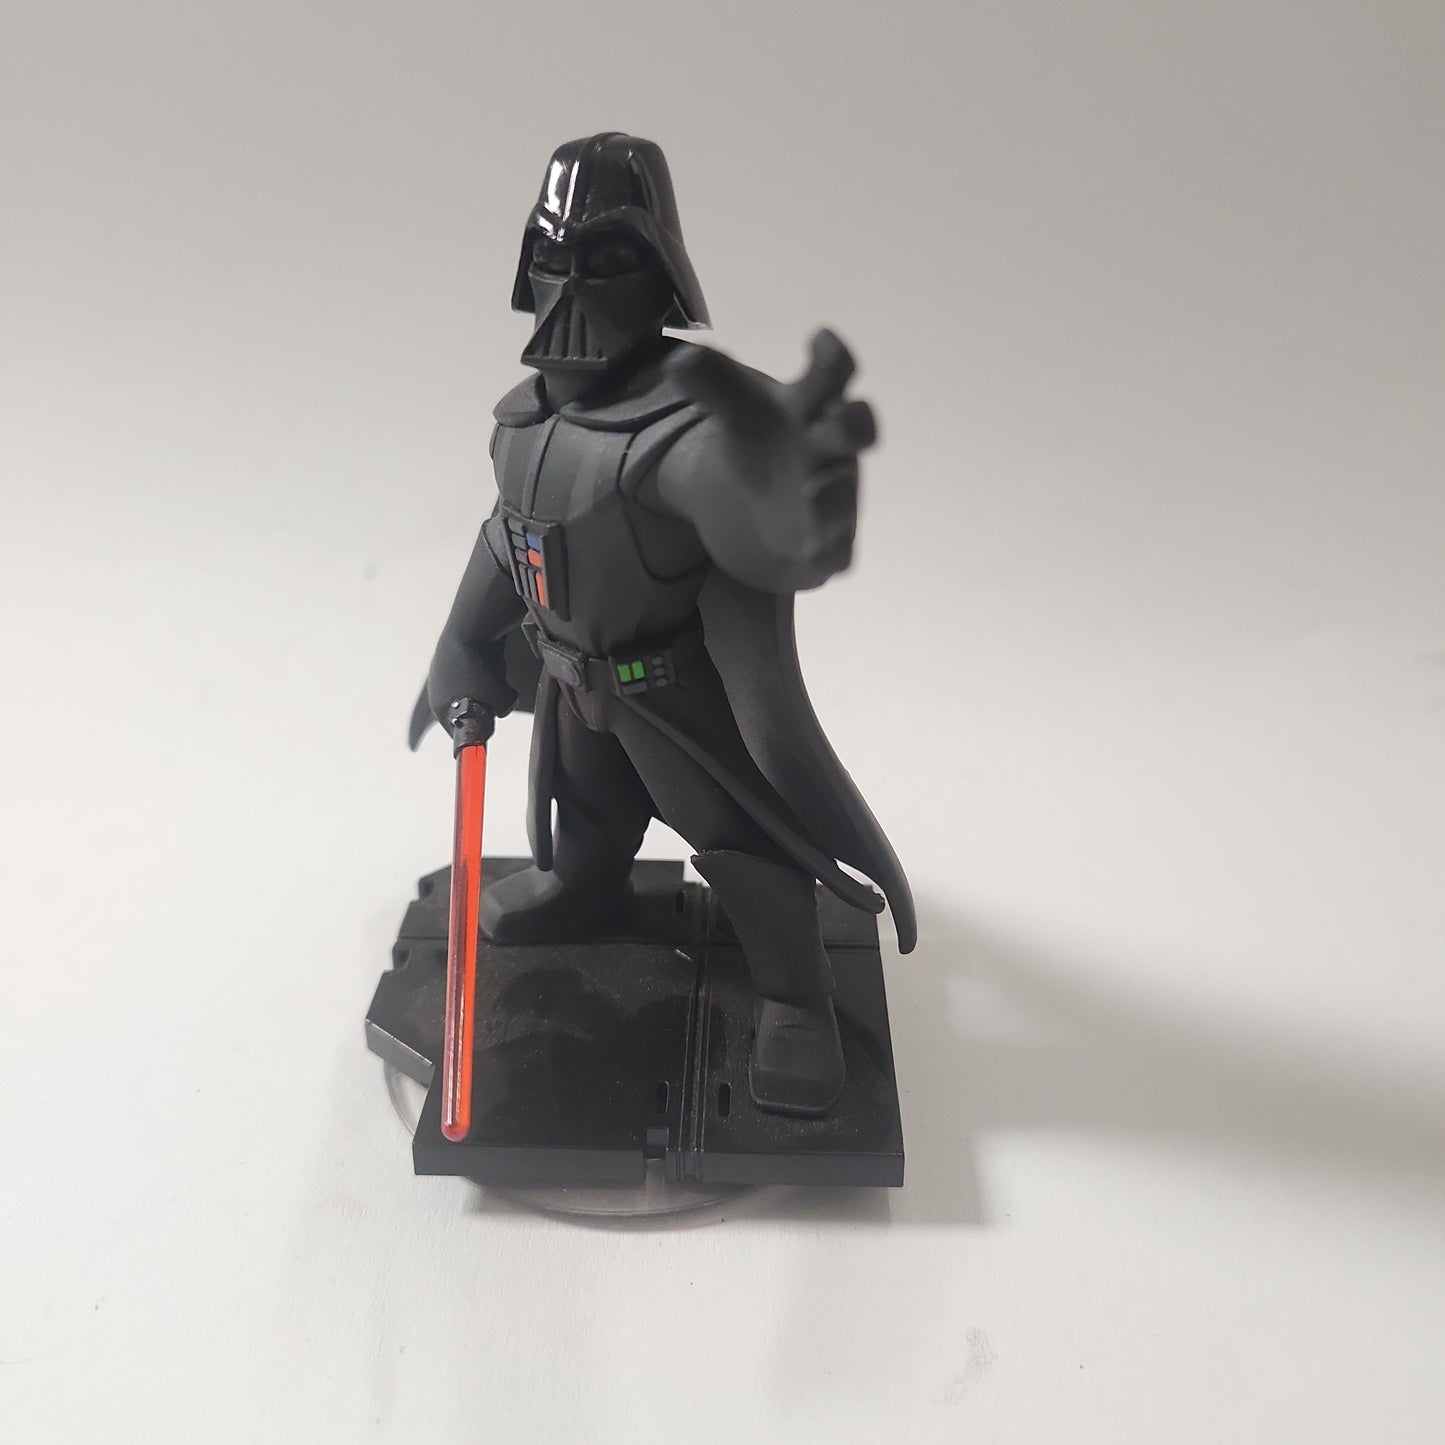 Darth Vader Disney Infinity 3.0